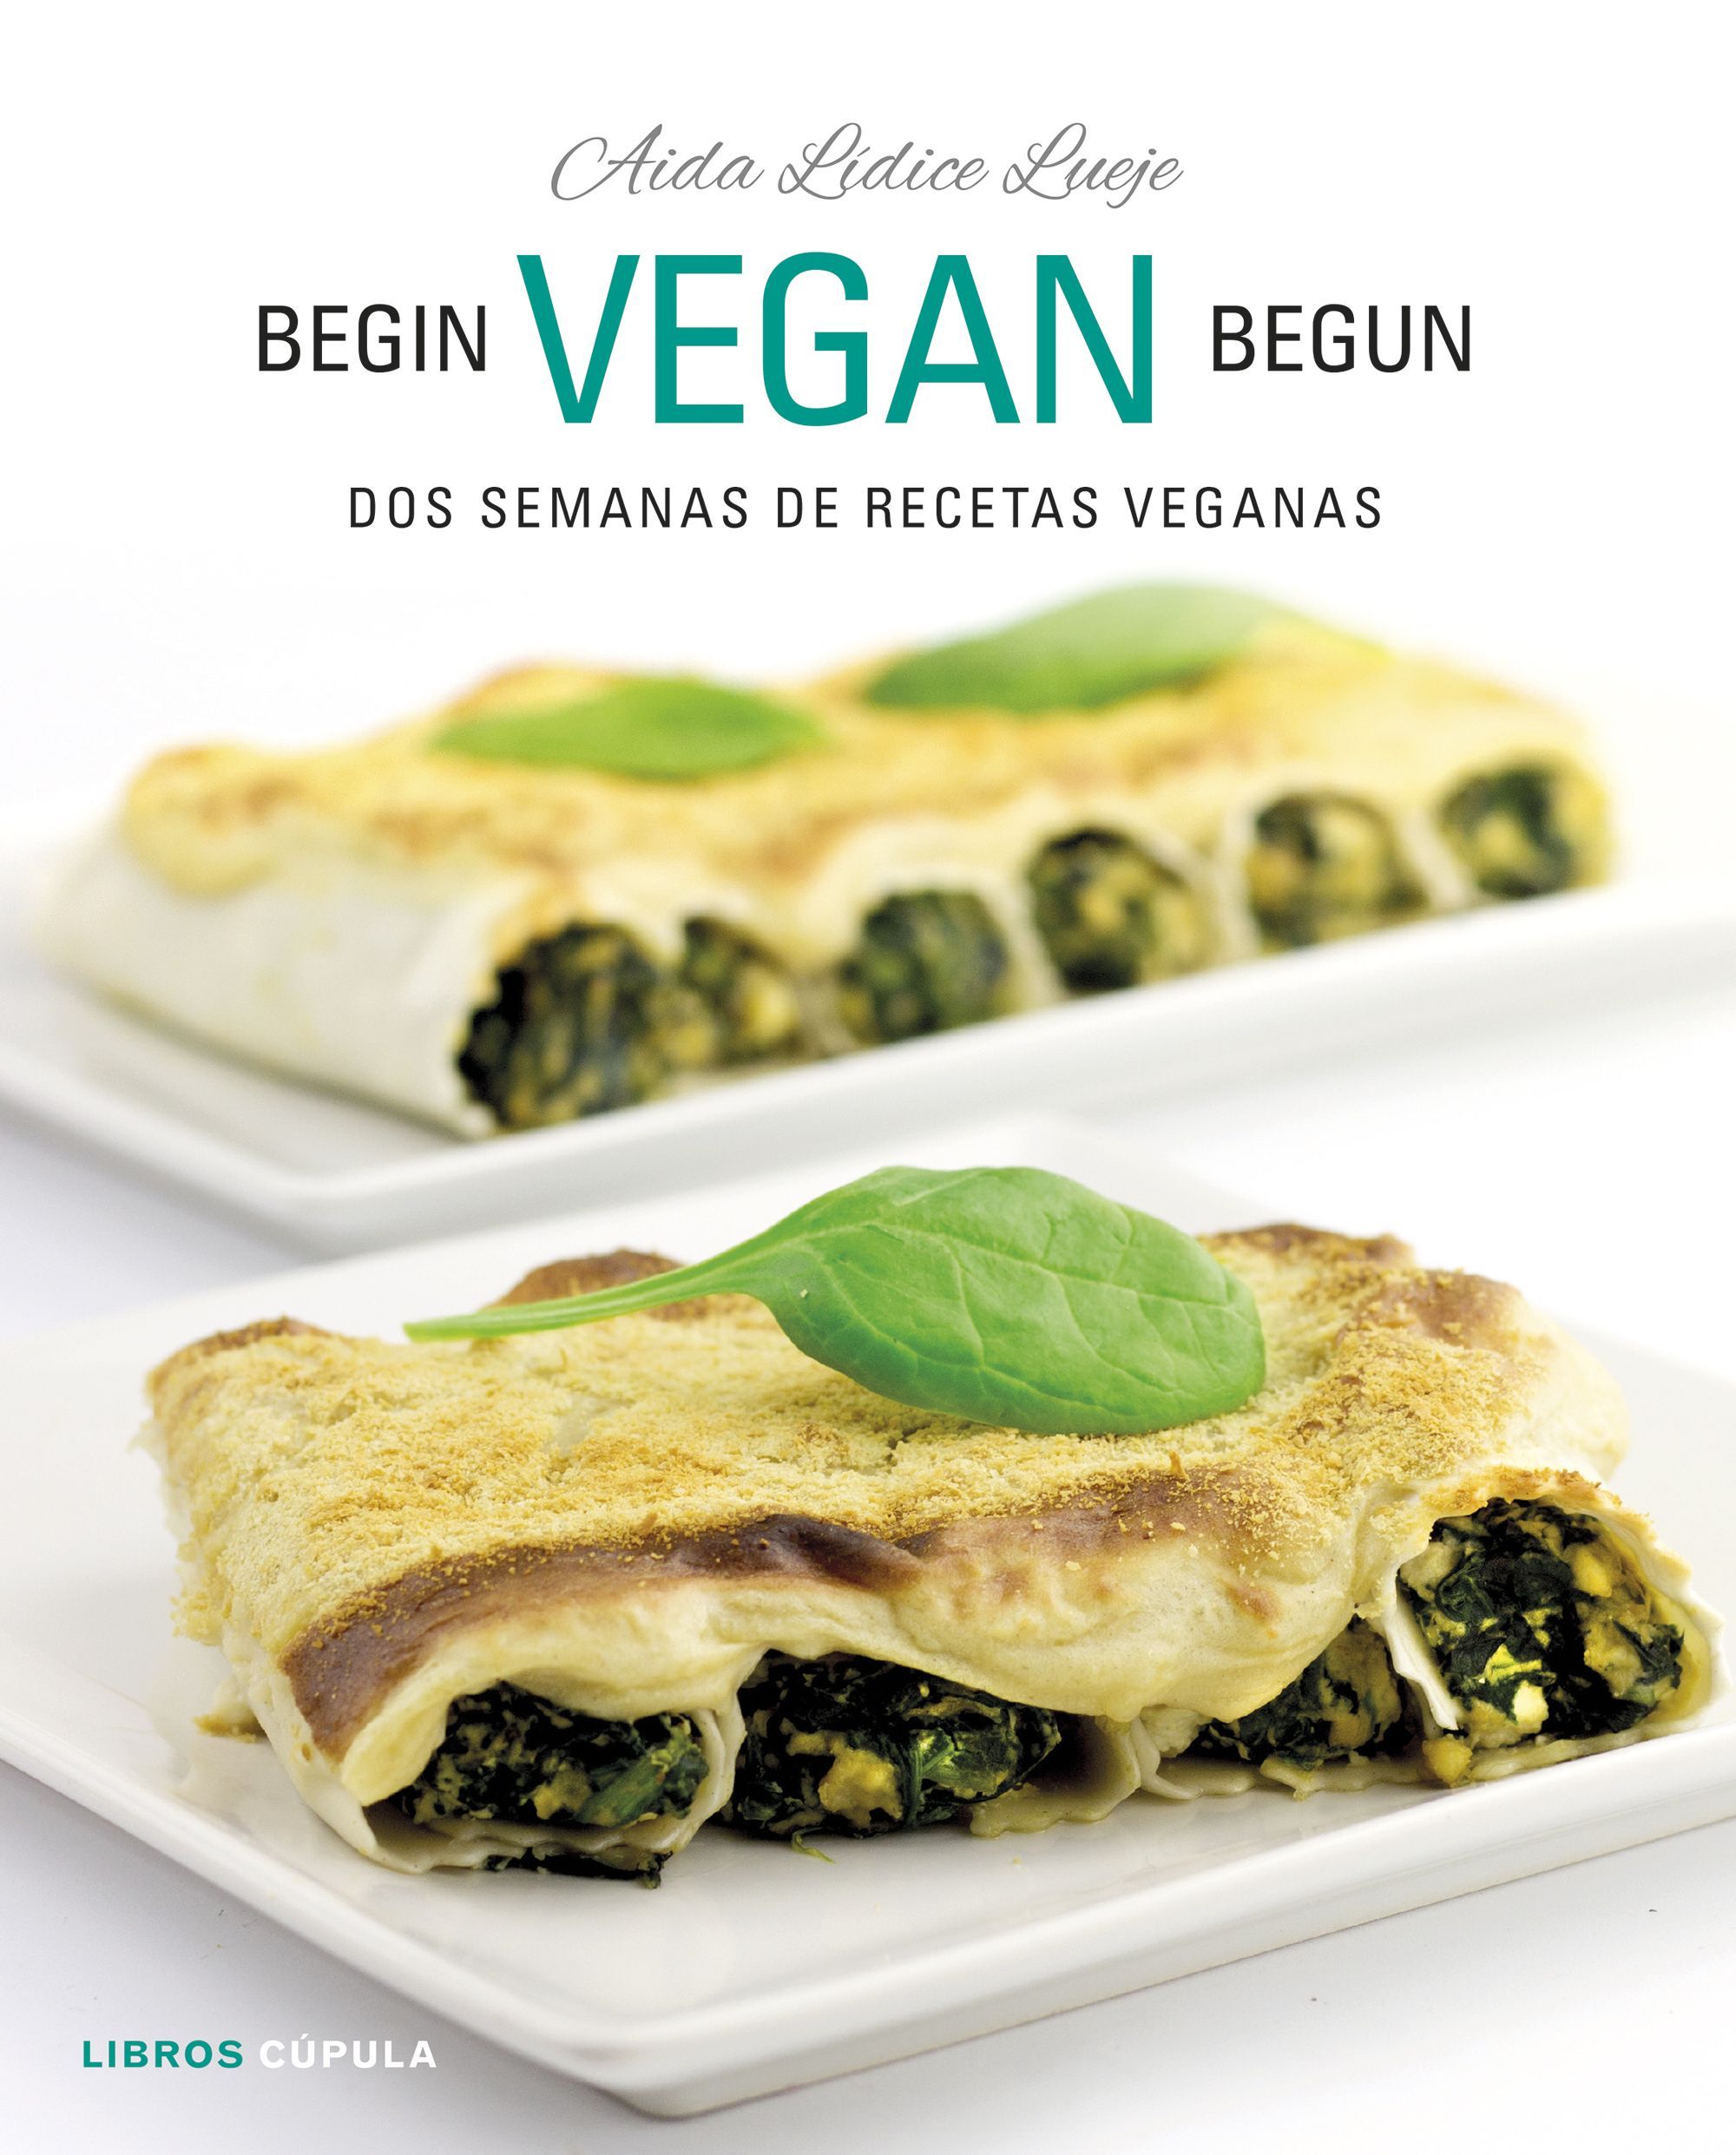 La bloguera Aída Lídice nos inicia en la dieta veggie con un libro de recetas